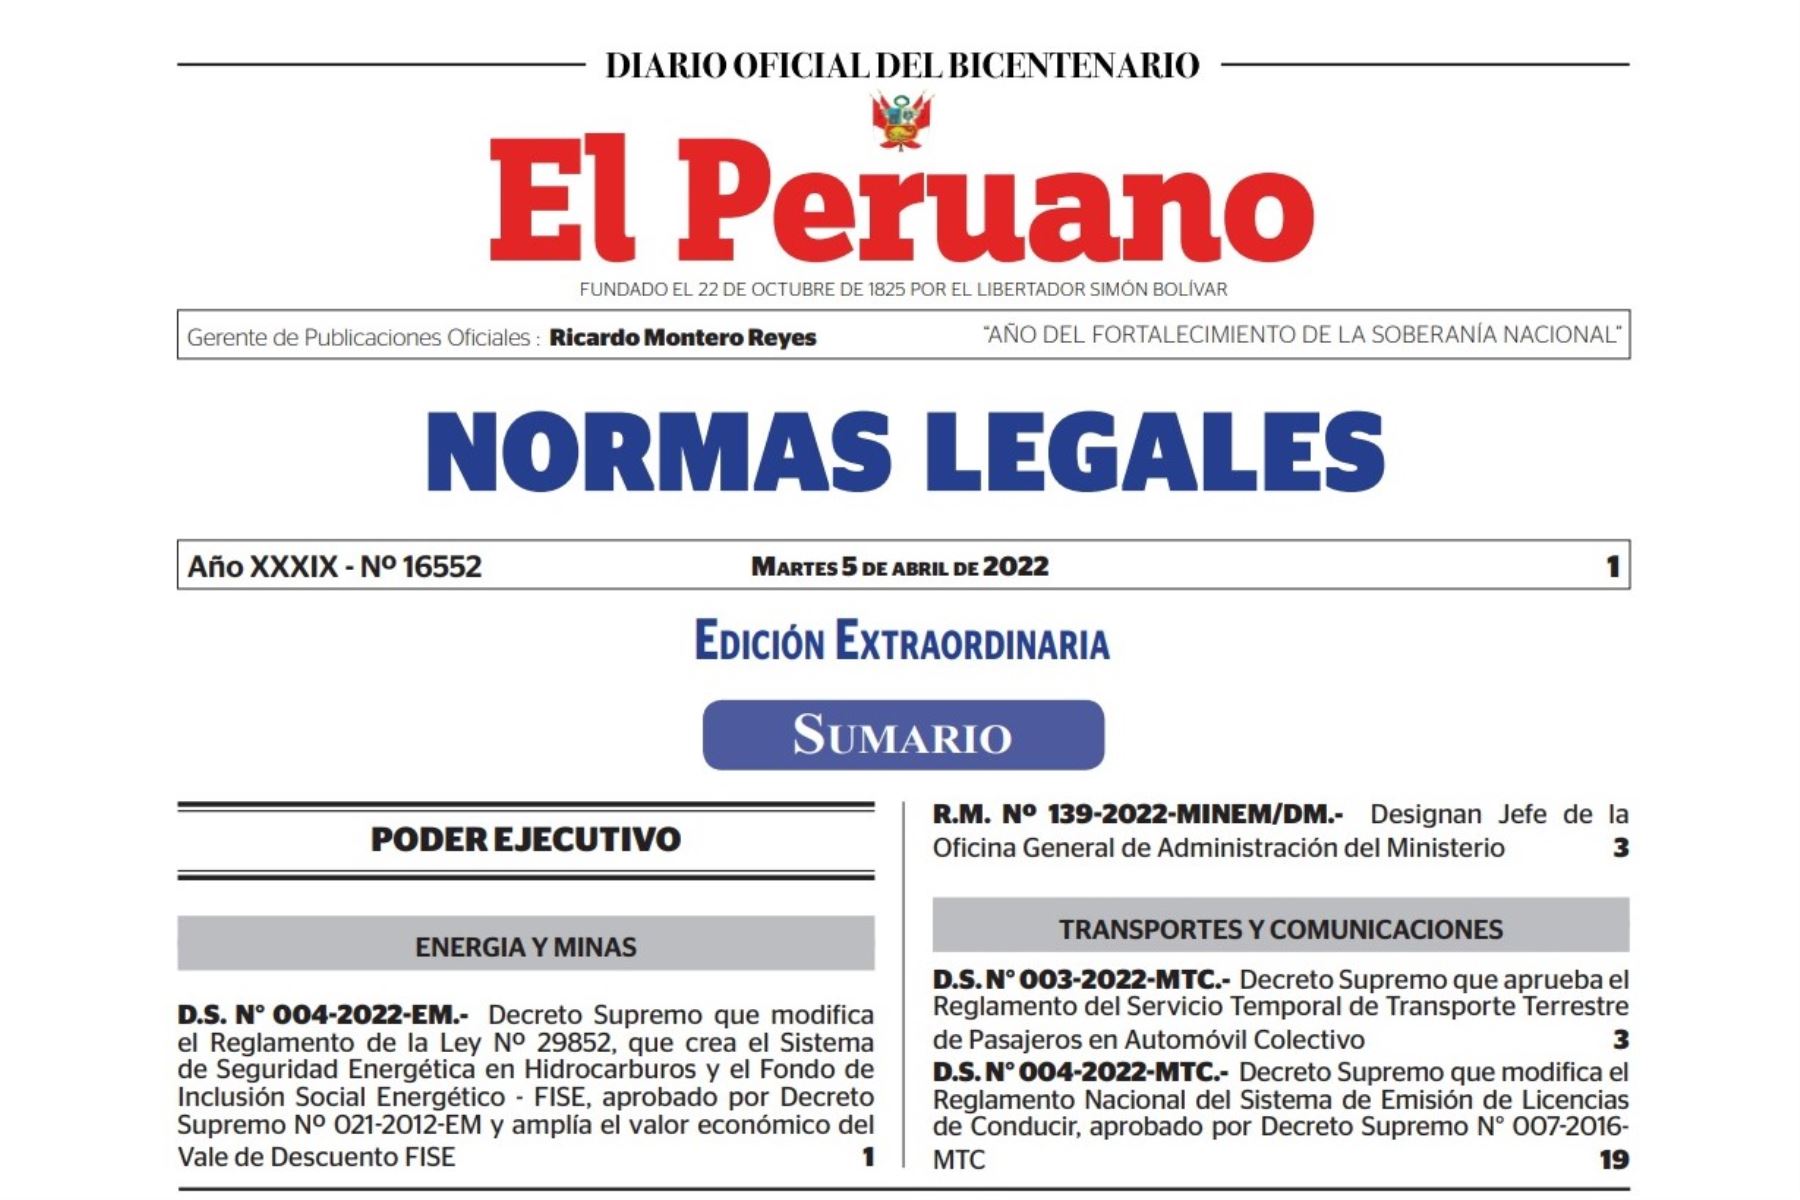 Cuadernillo de Normas Legales del Diario Oficial El Peruano.